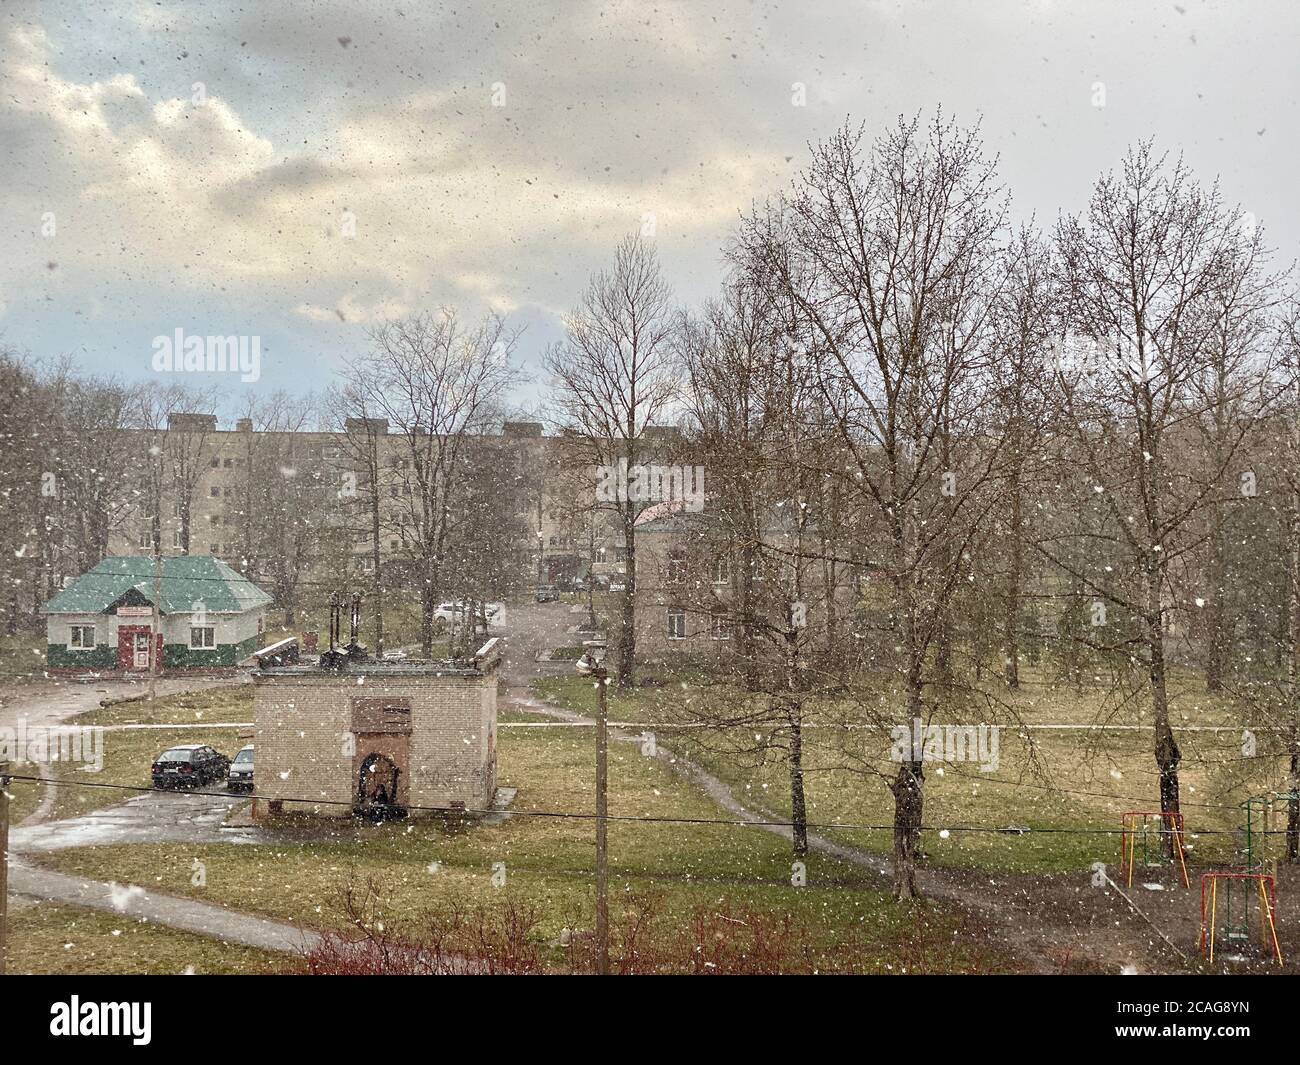 Plötzlicher heftiger Schneefall in einem städtischen Dorf mitten in einem sonnigen Frühlingstag Stockfoto